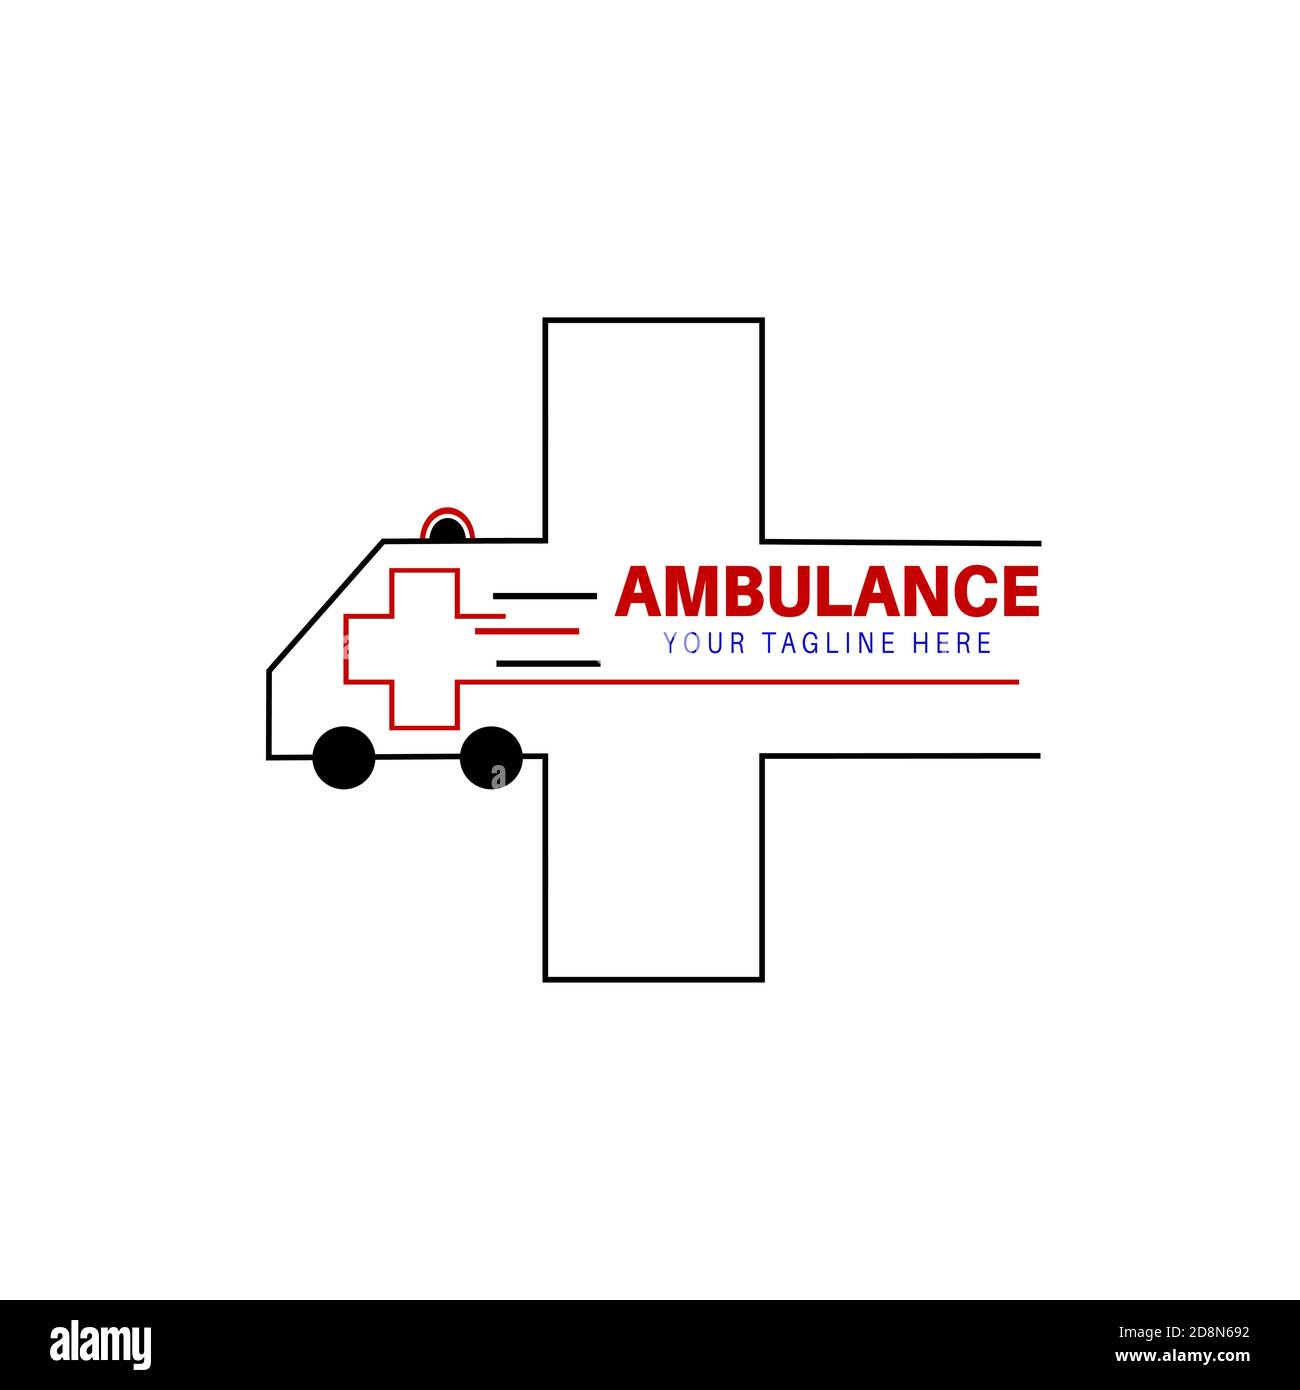 Ambulance Logo - Free Vectors & PSDs to Download